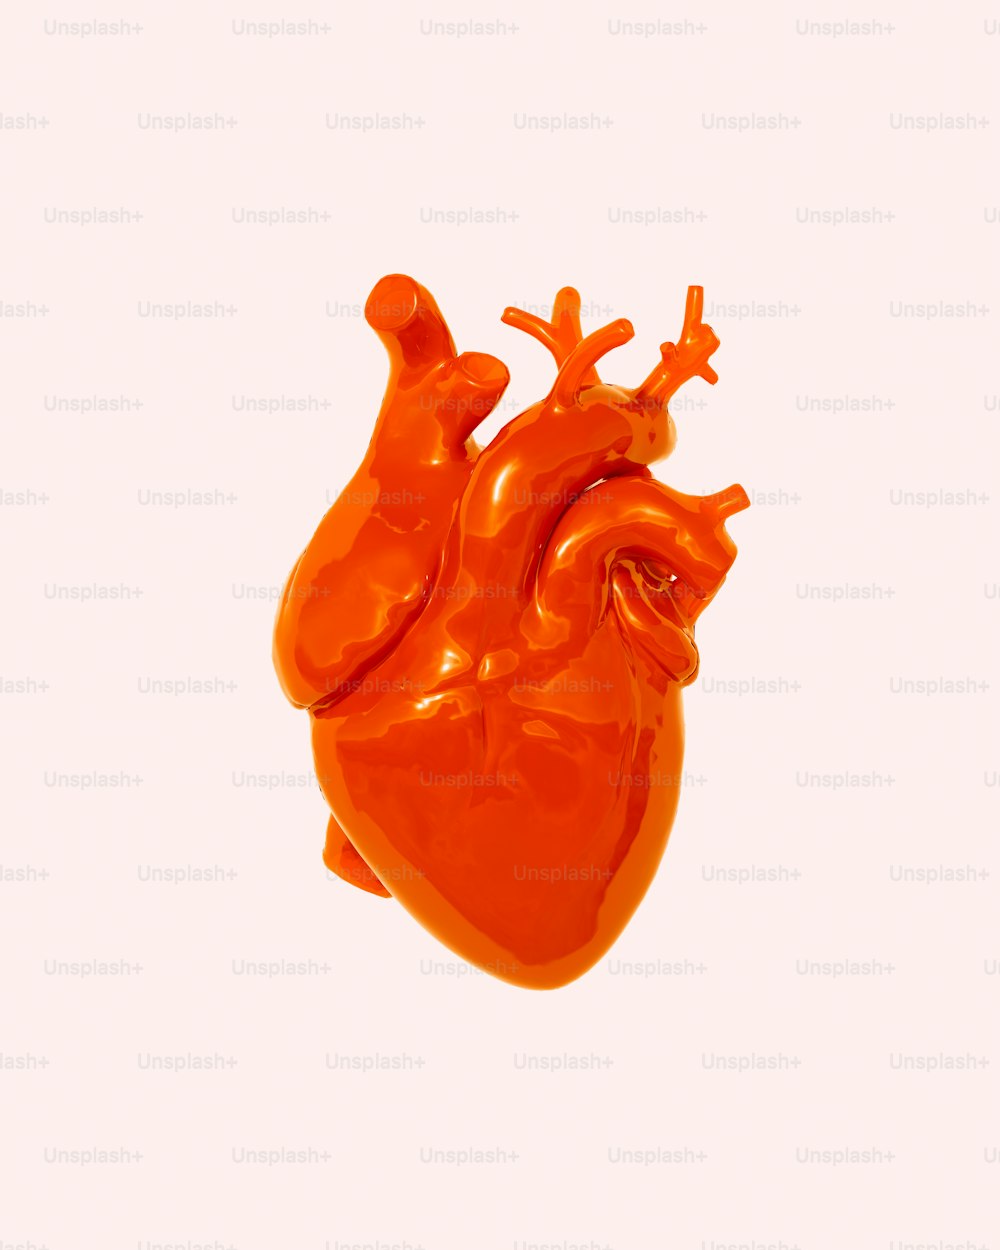 un objeto naranja en forma de corazón flotando en el aire